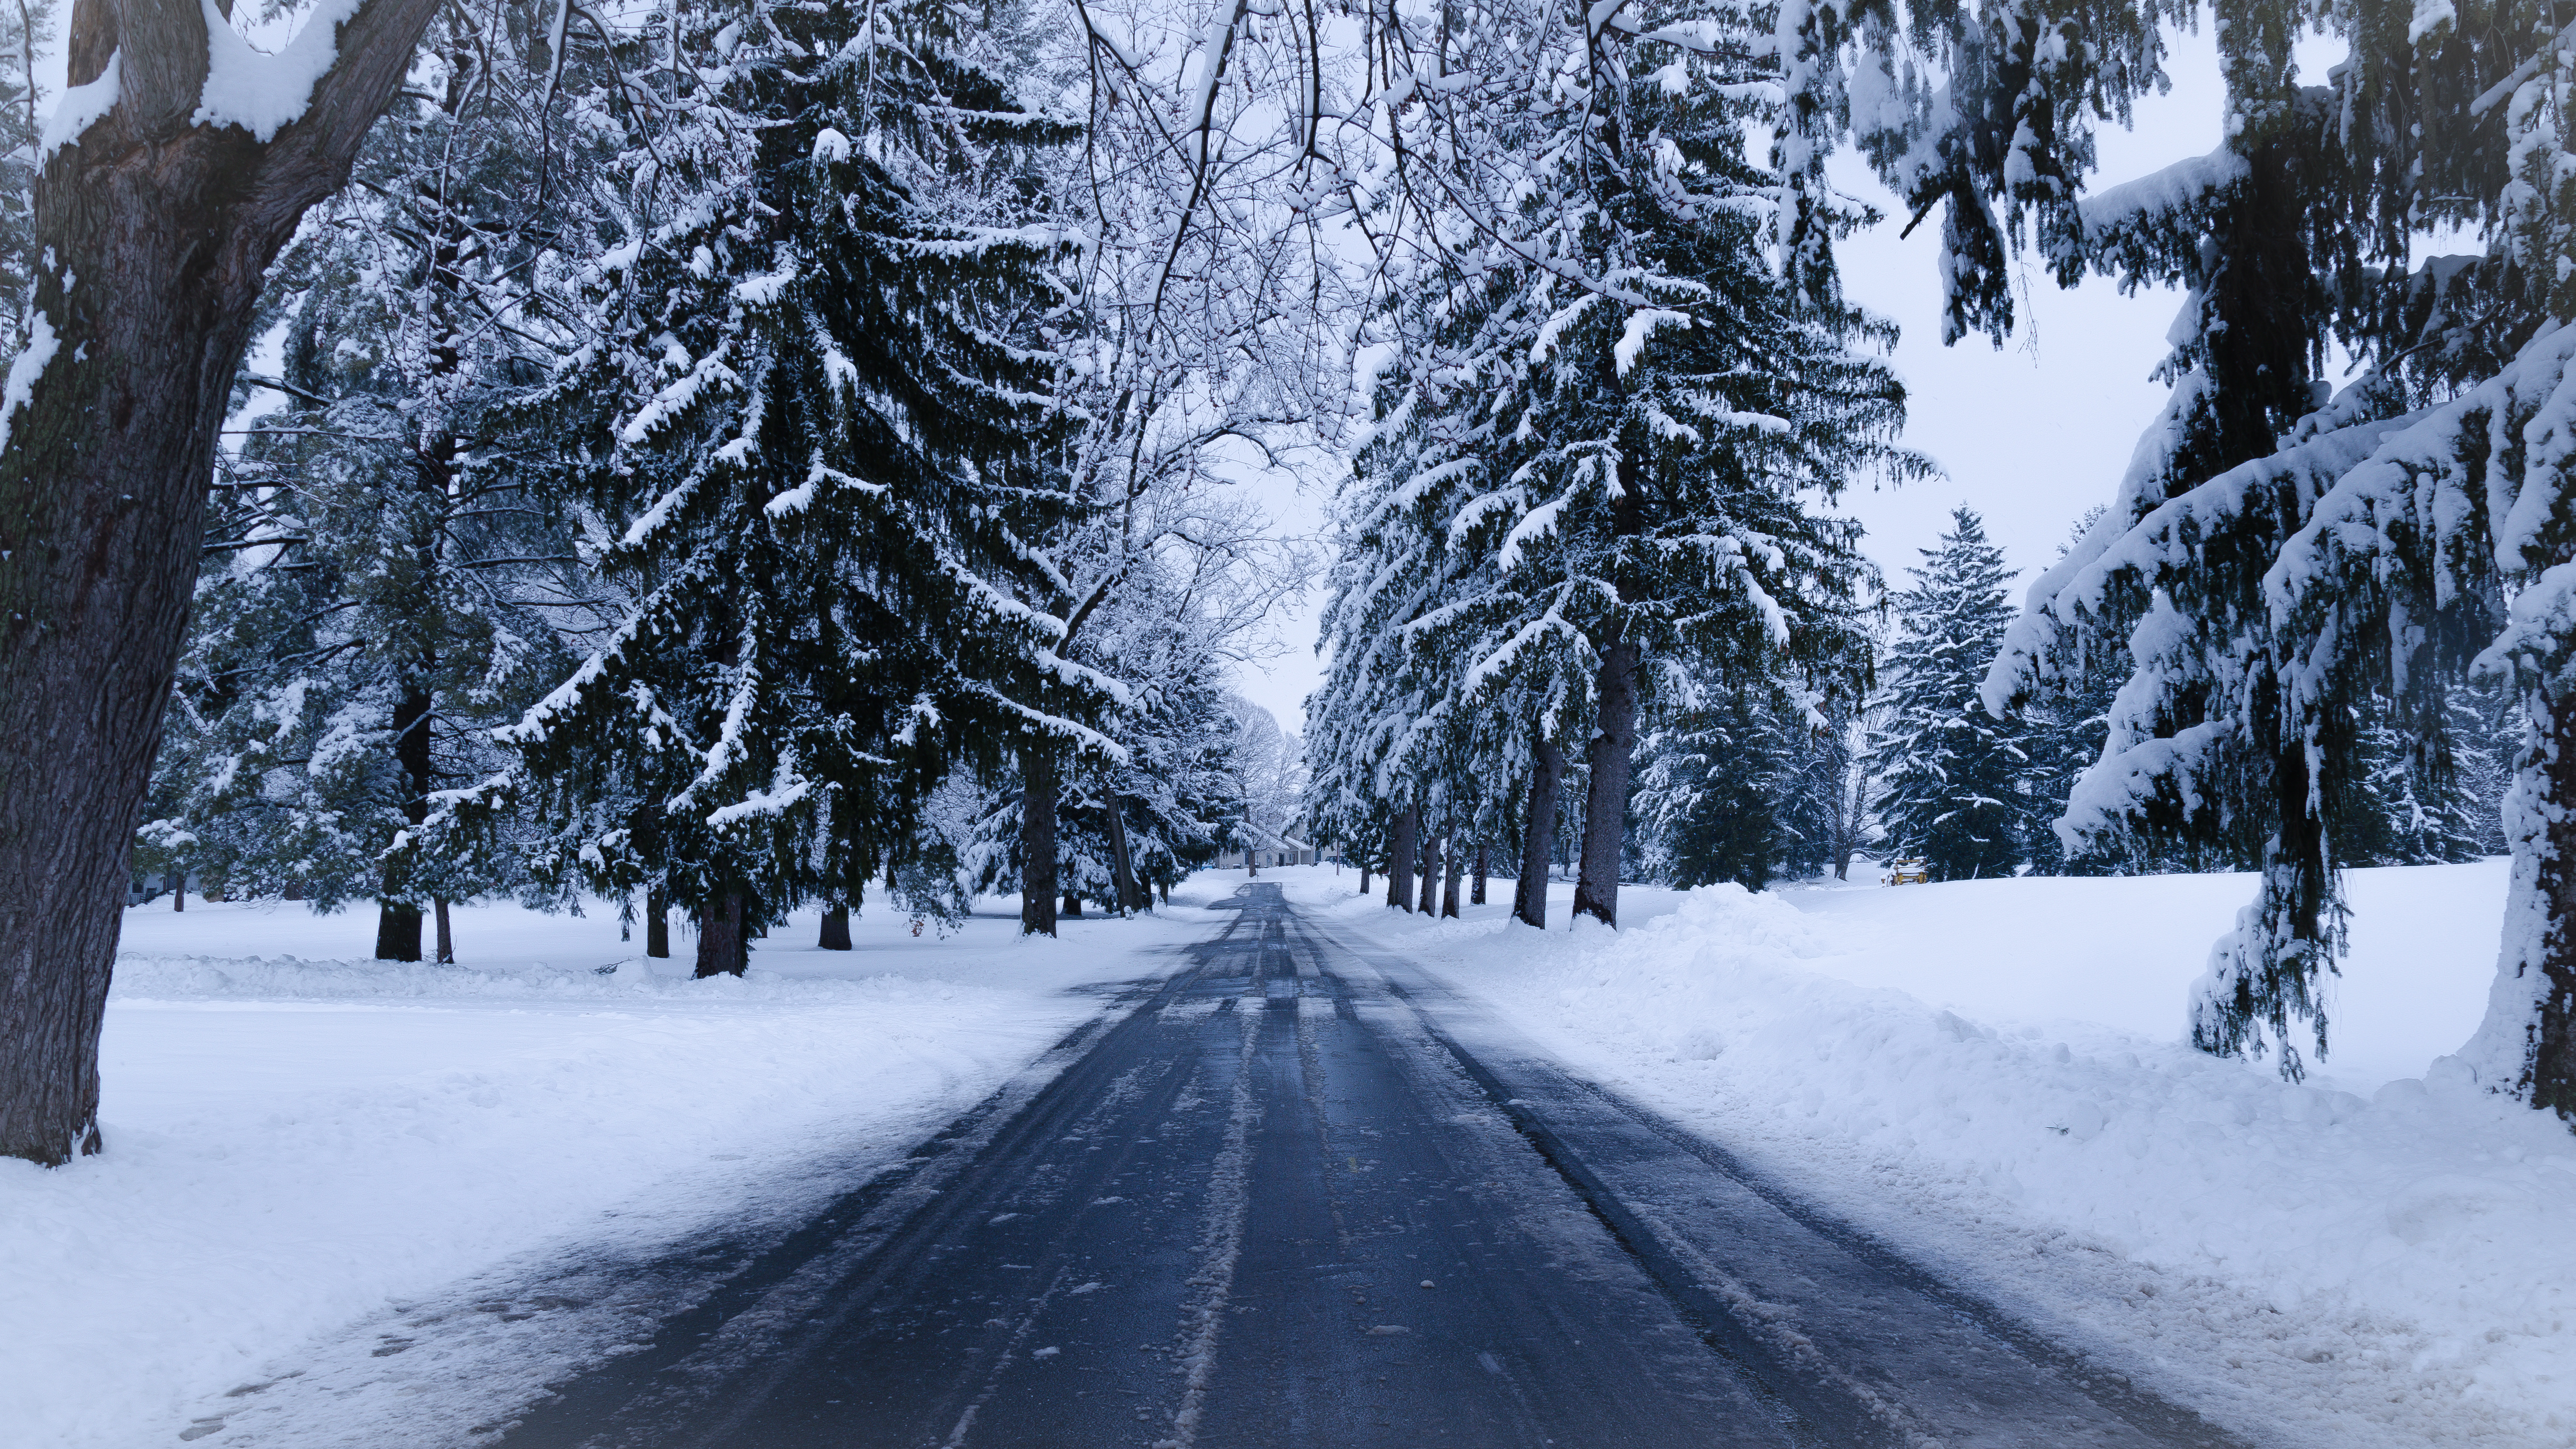 Popular Winter Landscape images for mobile phone